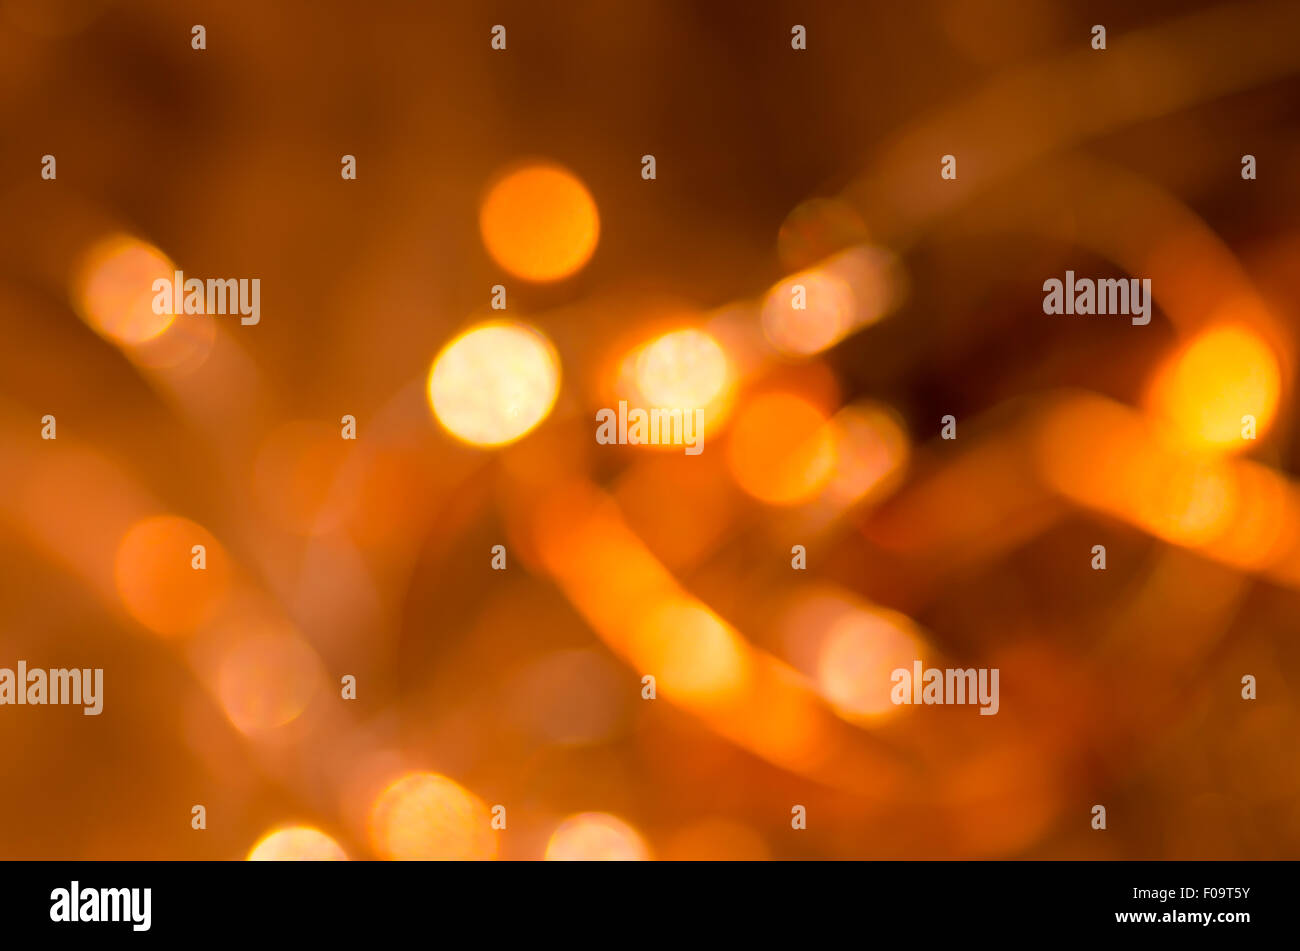 Abstracto naranja bokeh de fondo luces borrosa Foto de stock